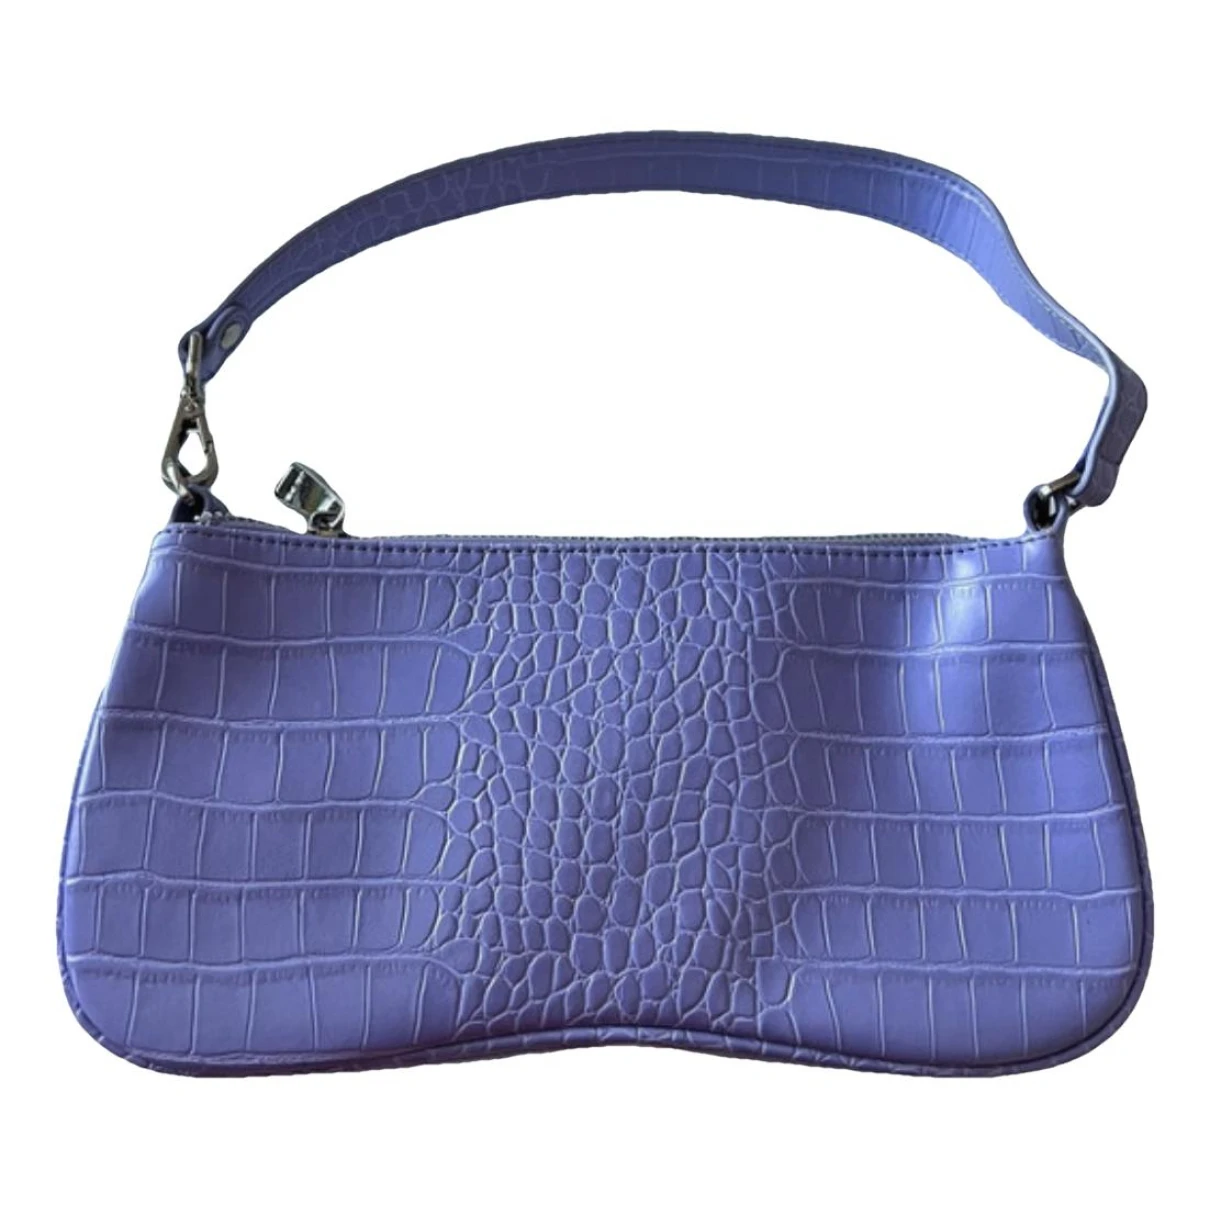 Pre-owned Jw Pei Vegan Leather Handbag In Purple